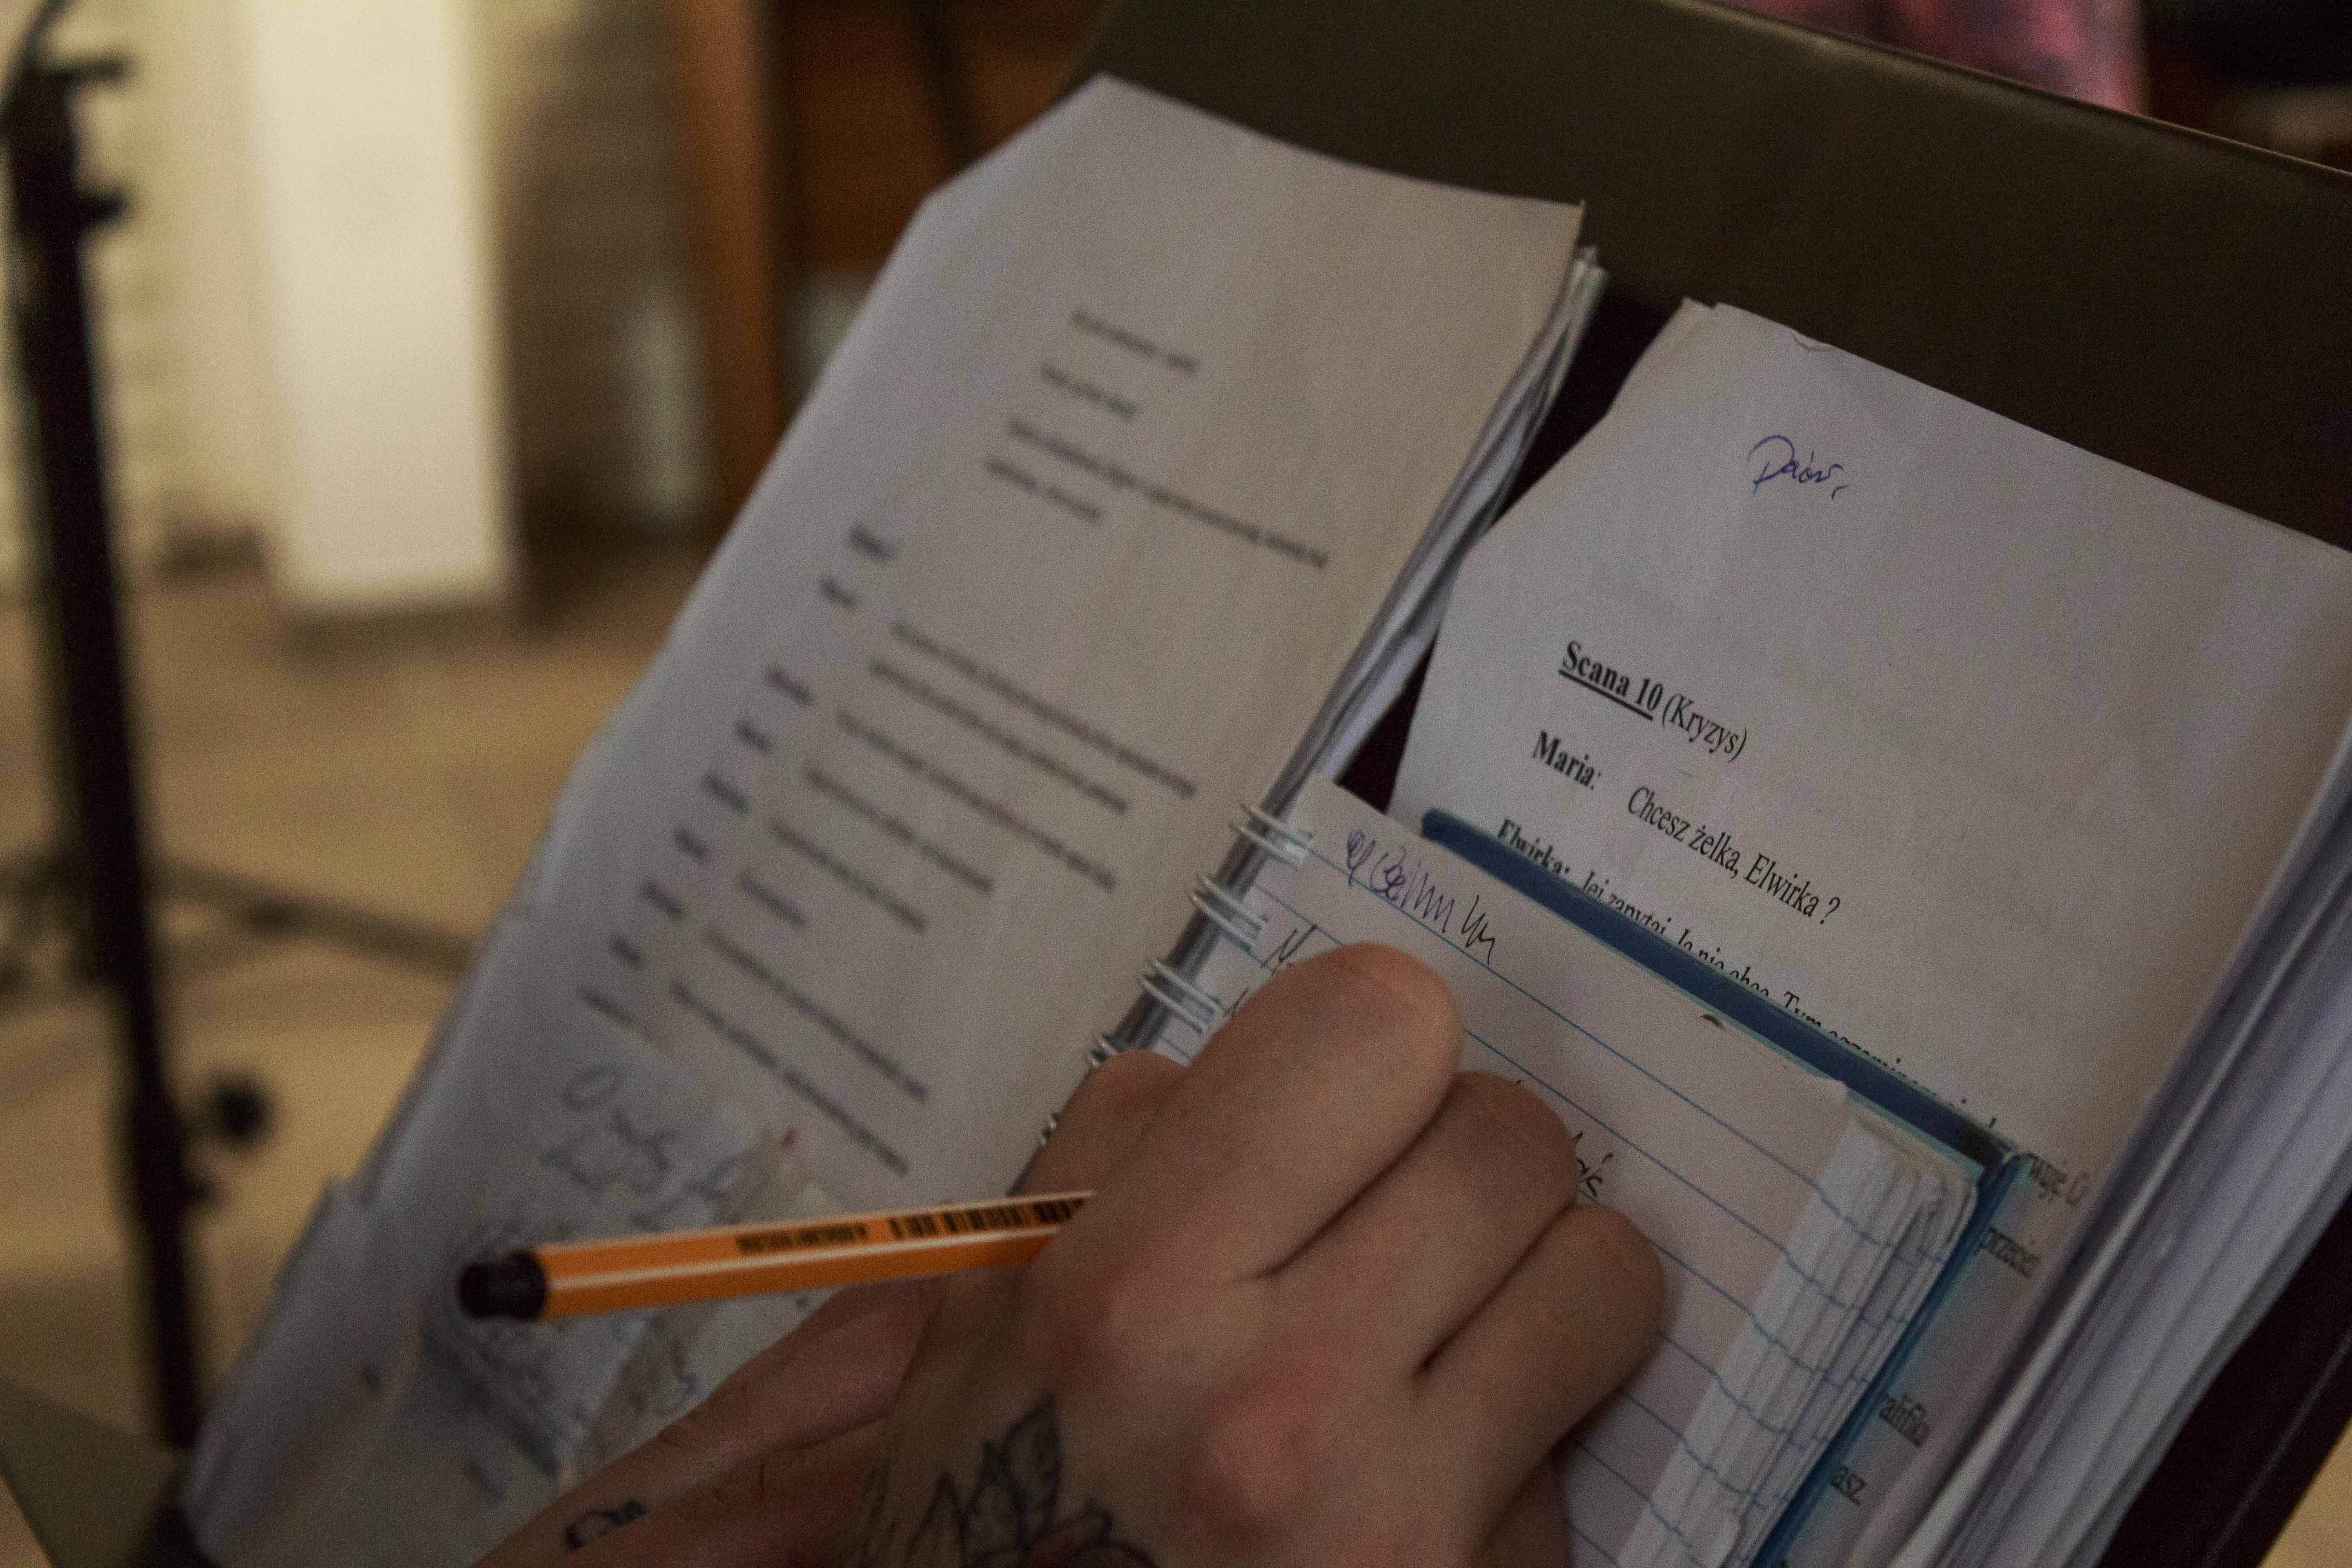 Zdjęcie scenariusza na pulpicie. widać też dłoń z długopisem.